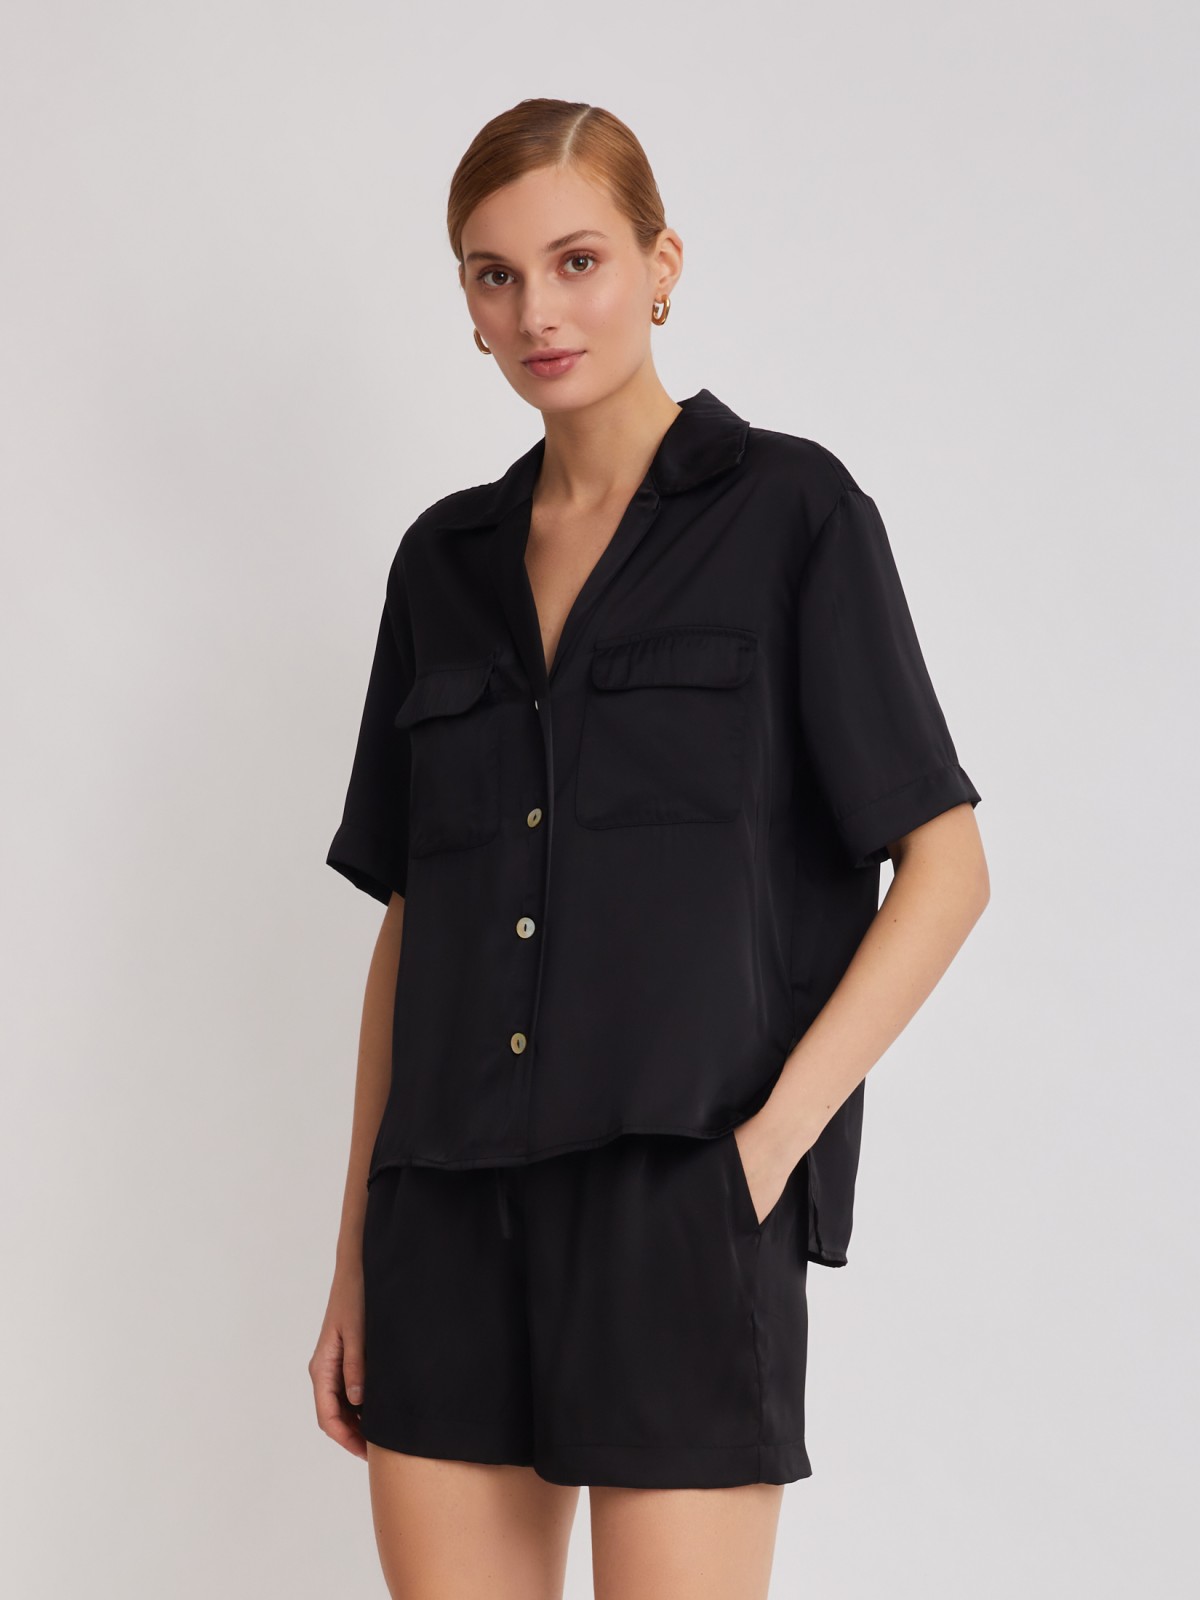 Блузка с короткими рукавами zolla 22325127Y061, цвет черный, размер XS - фото 3